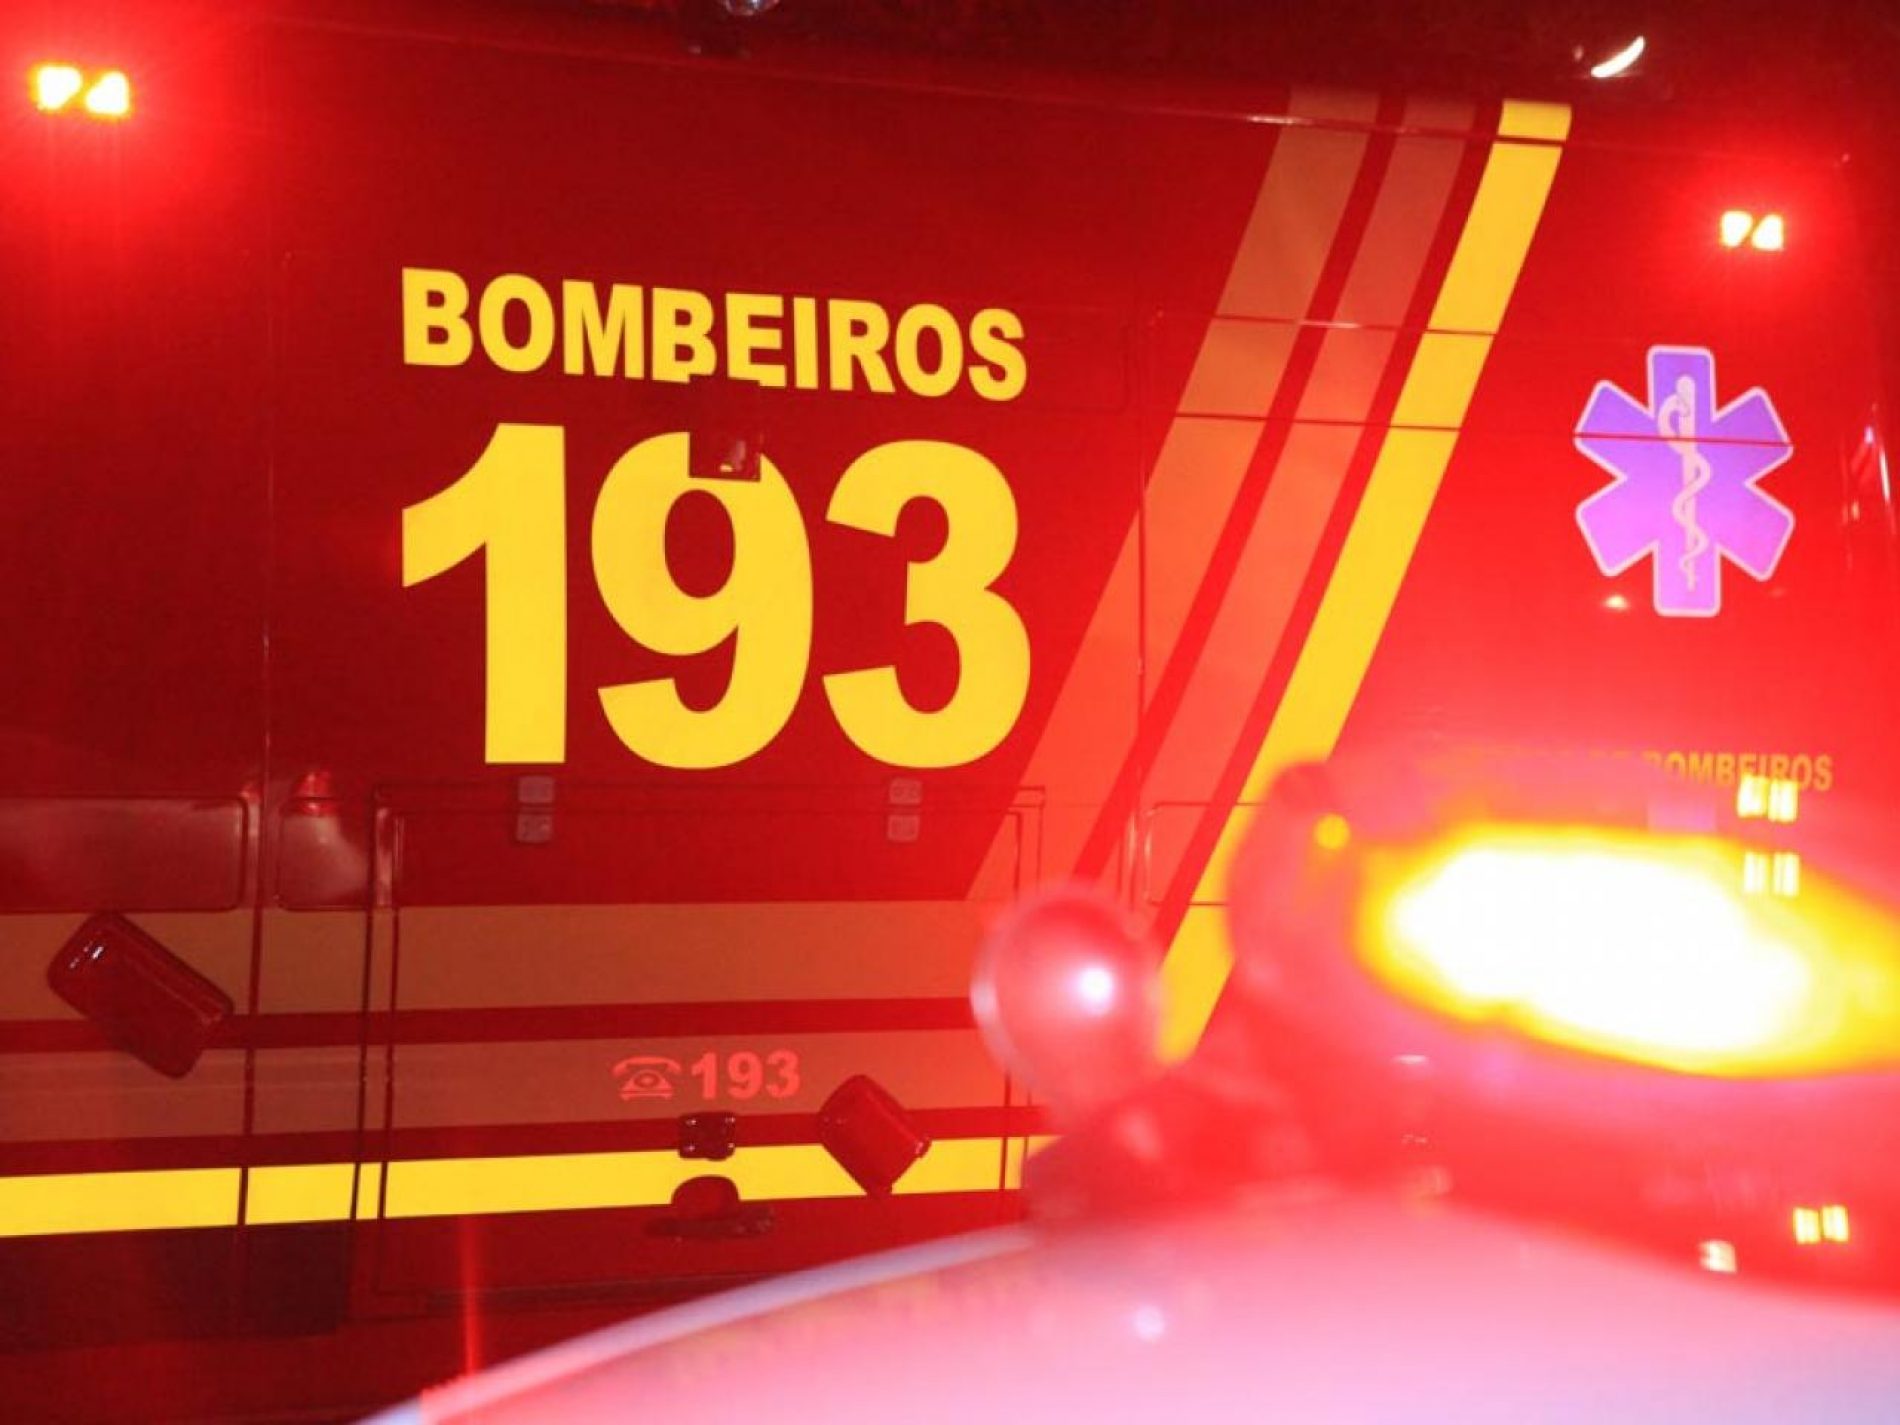 BARRETOS: Incêndio em residência no bairro City Barretos